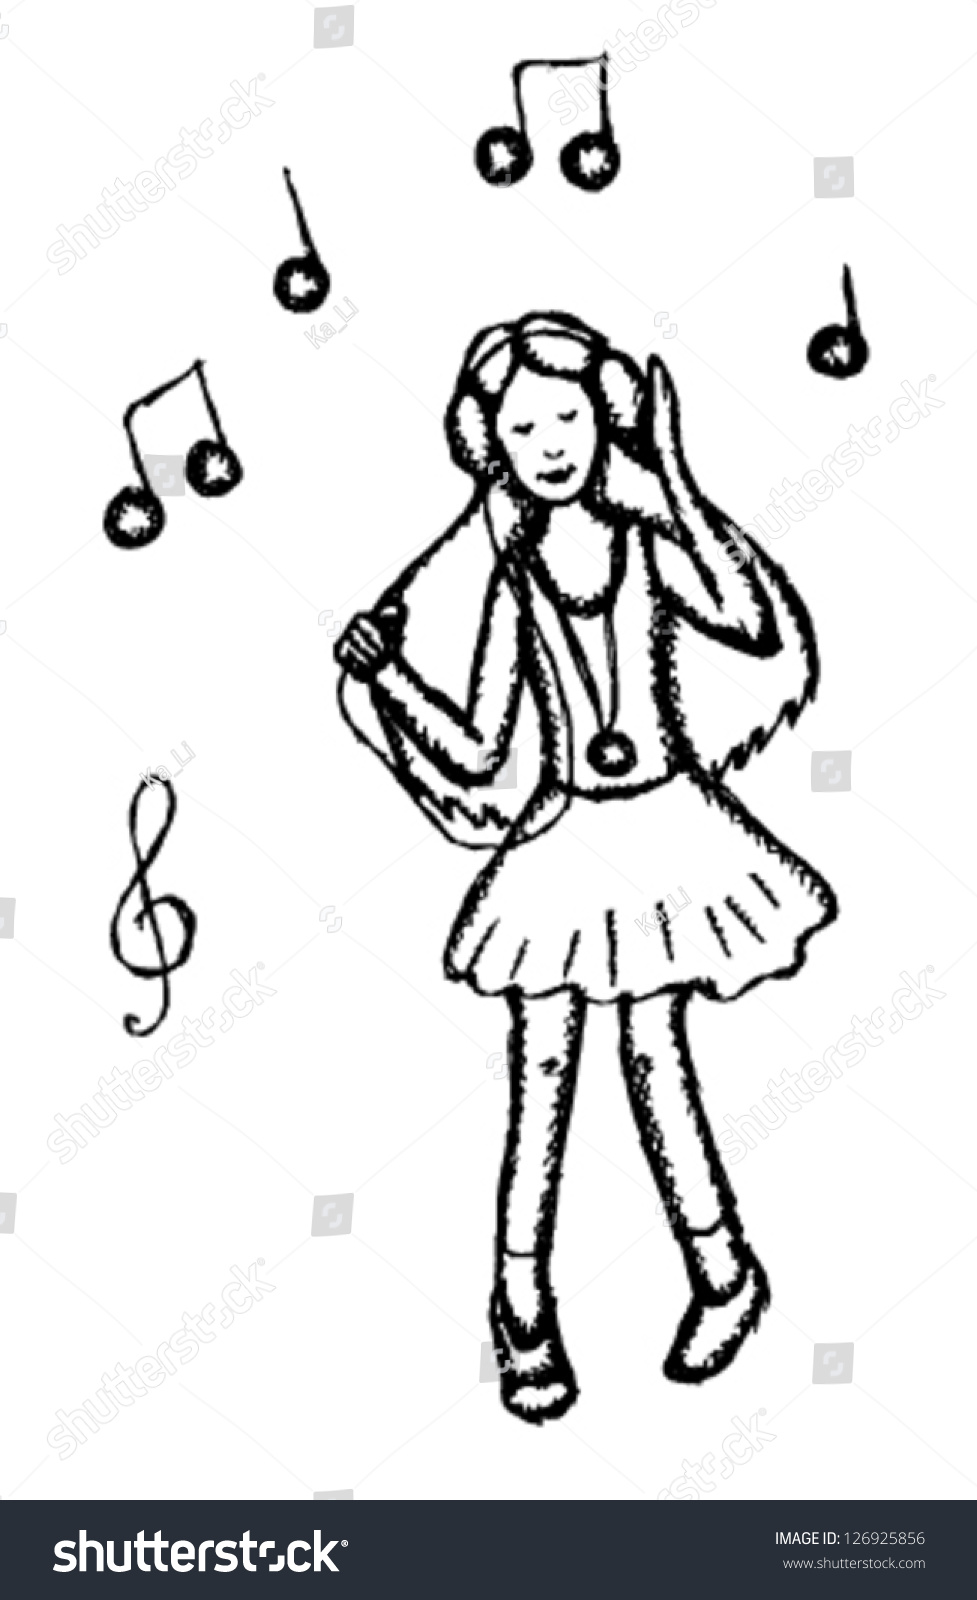 Girl Dancing In Earphones, Vector Sketch Illustration - 126925856